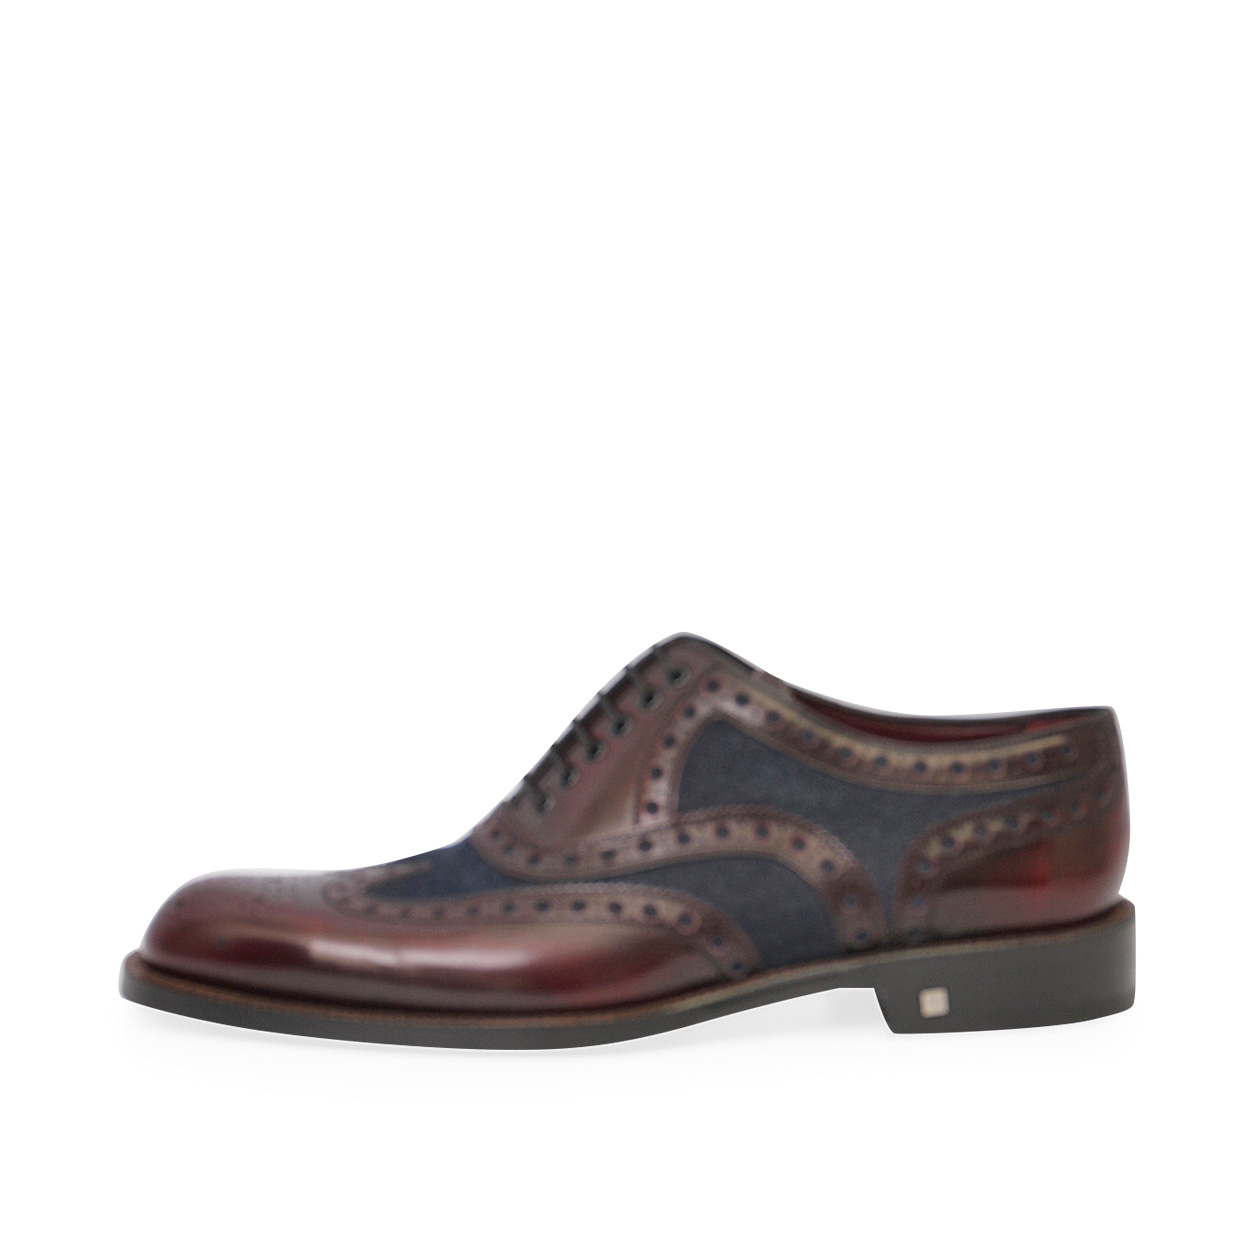 Louis Vuitton Men's Burgundy Leather Oxfords Rubber Sole Lace Up Shoes  size 8